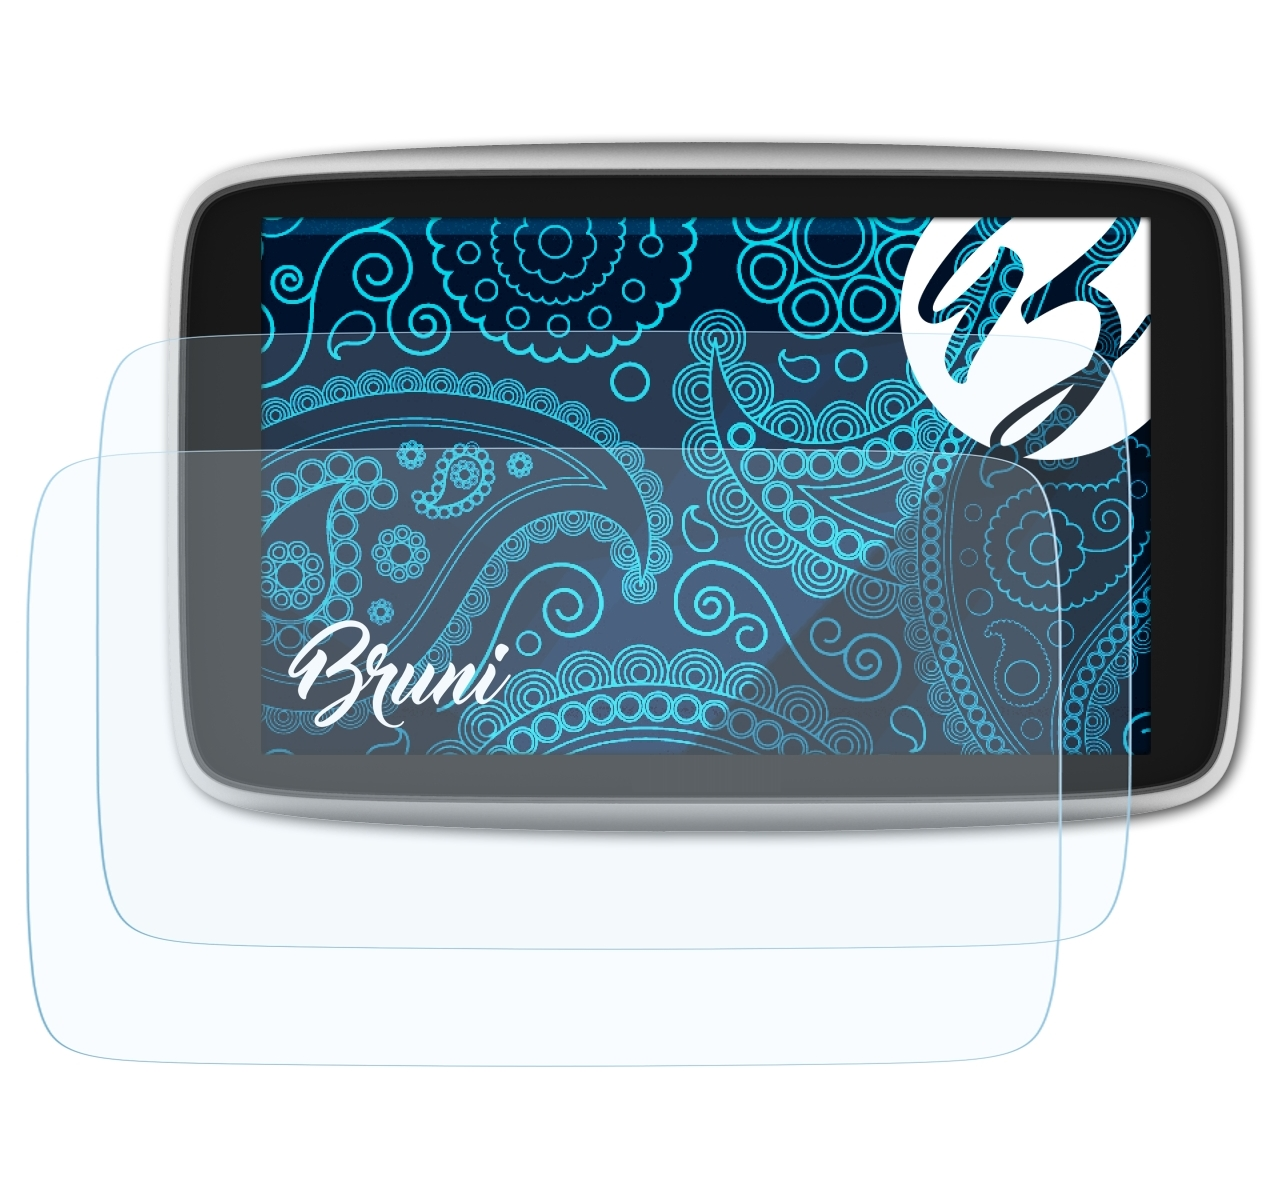 BRUNI inch)) TomTom Basics-Clear Schutzfolie(für (6 2x Premium X GO